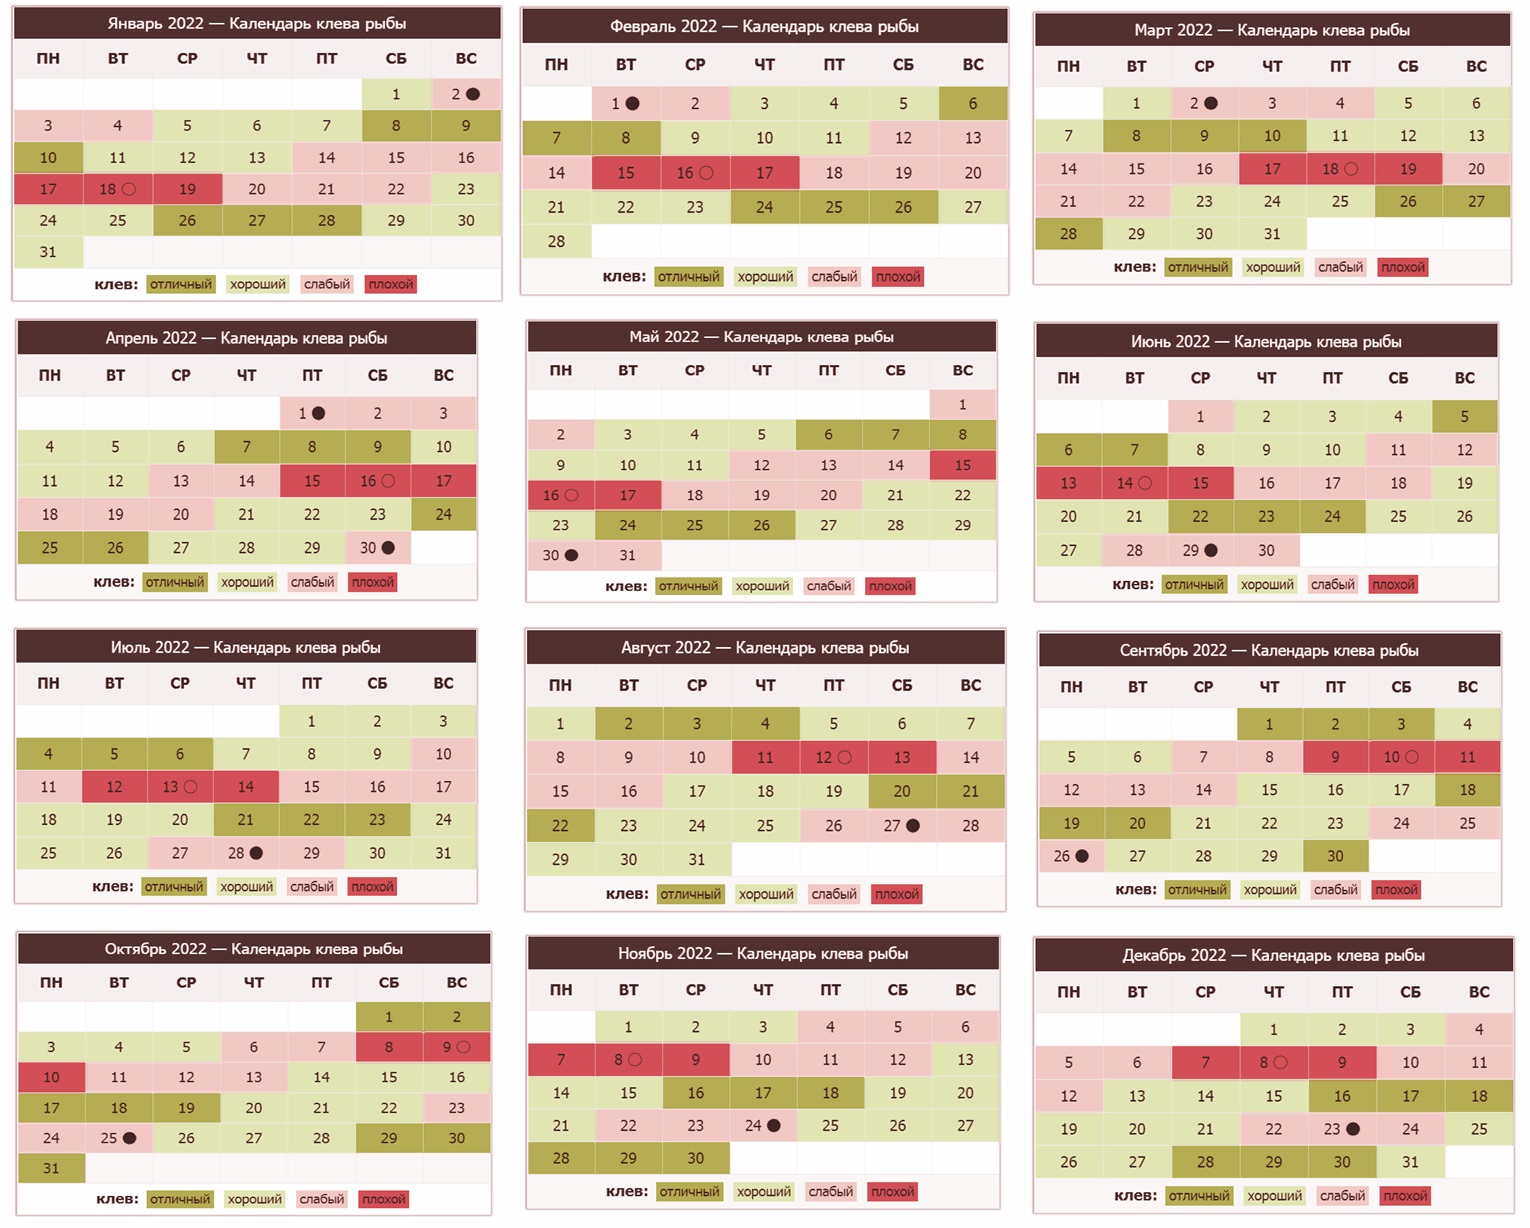 Рыболовный календарь 2022 года: благоприятные дни для ловли рыбы, по месяцам, в смоленске, ростовская область, в краснодарском крае, карелия, энгельс